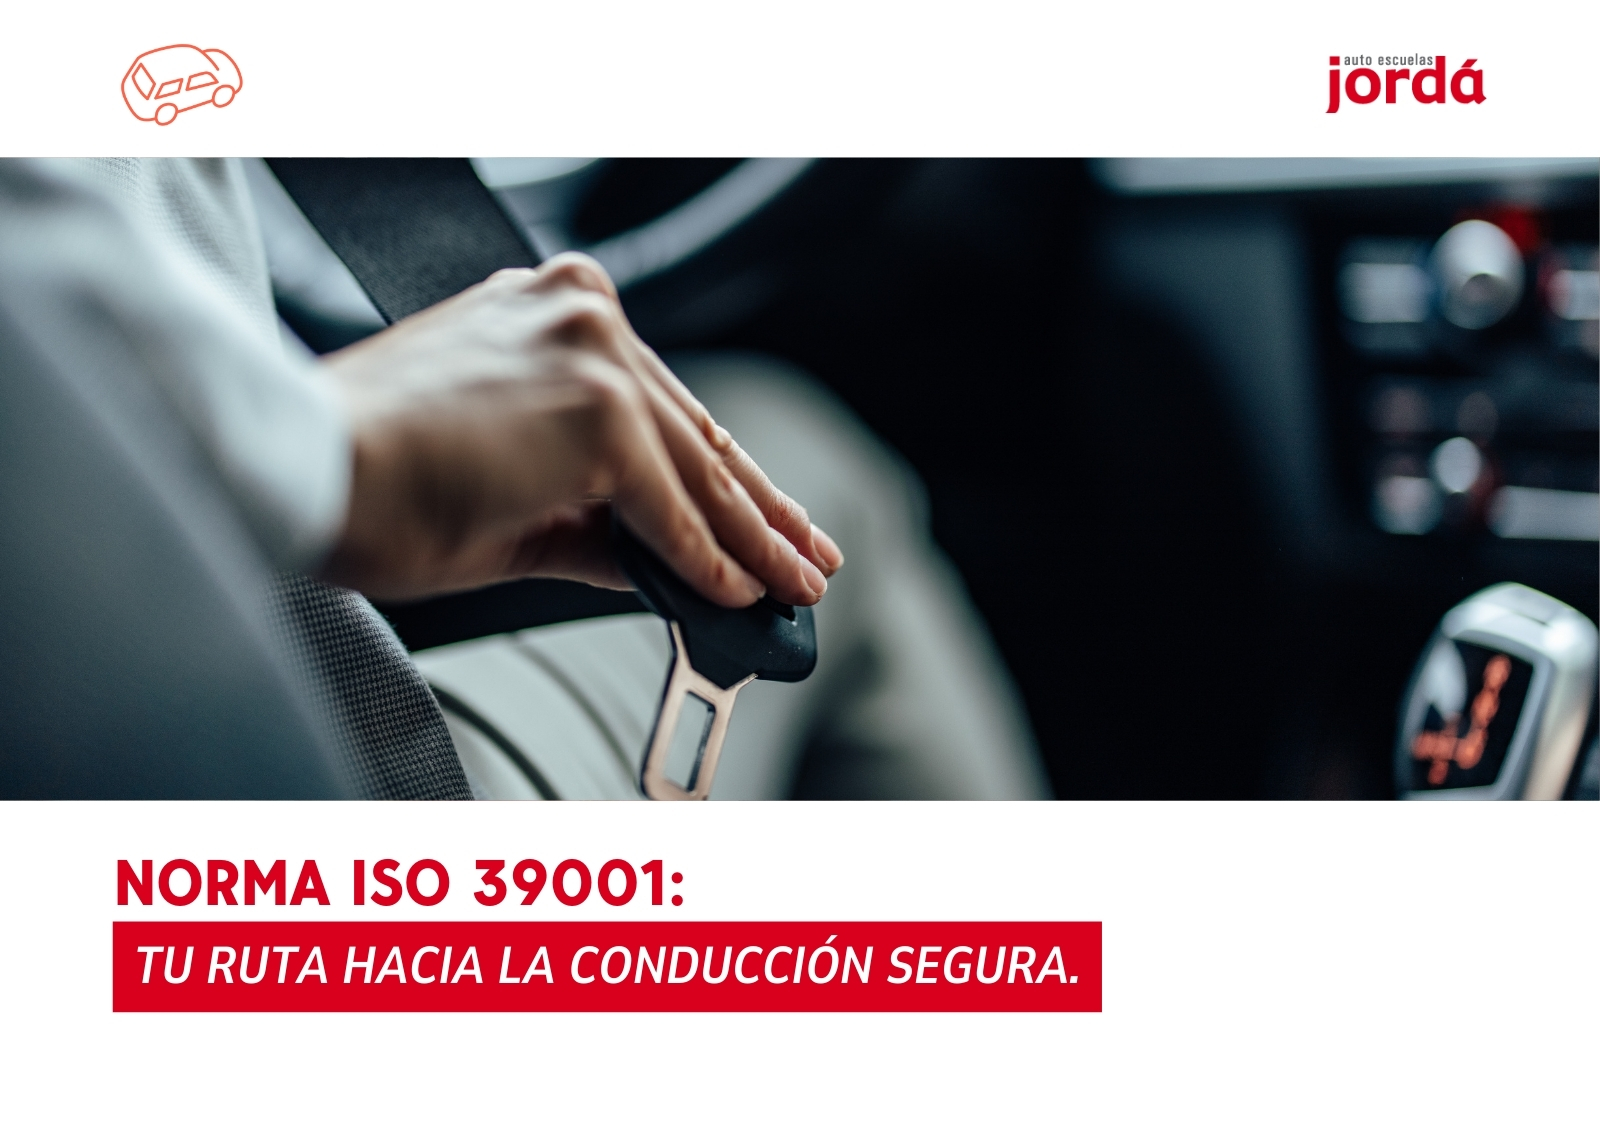 Norma ISO 39001: Tu Ruta Hacia la Conducción Segura